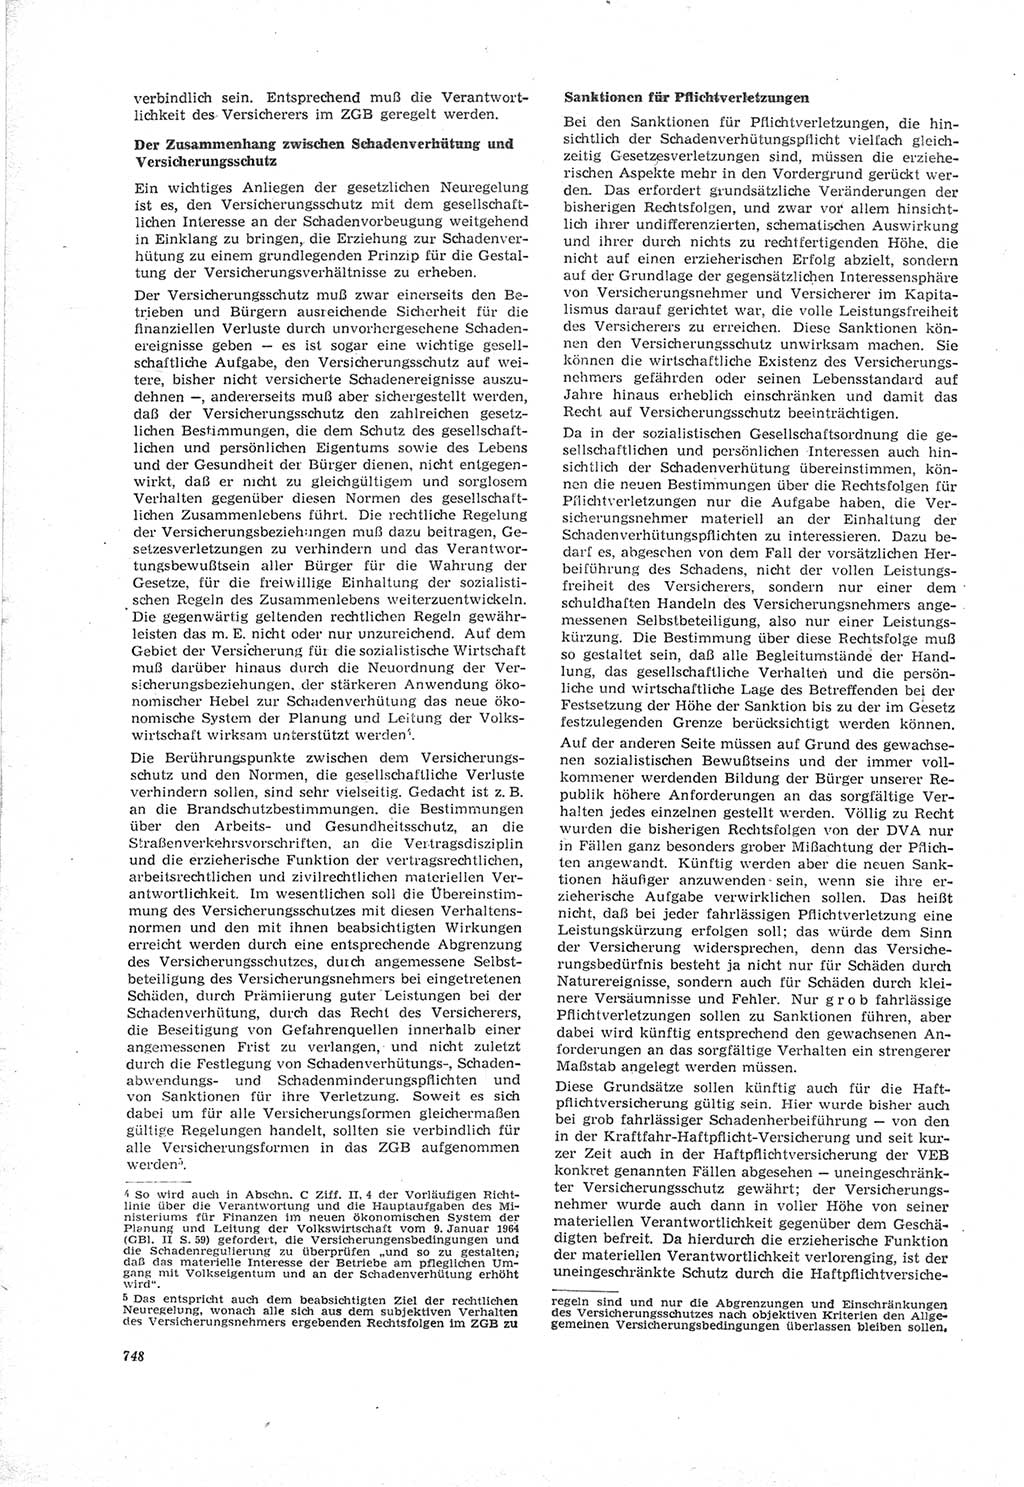 Neue Justiz (NJ), Zeitschrift für Recht und Rechtswissenschaft [Deutsche Demokratische Republik (DDR)], 18. Jahrgang 1964, Seite 748 (NJ DDR 1964, S. 748)